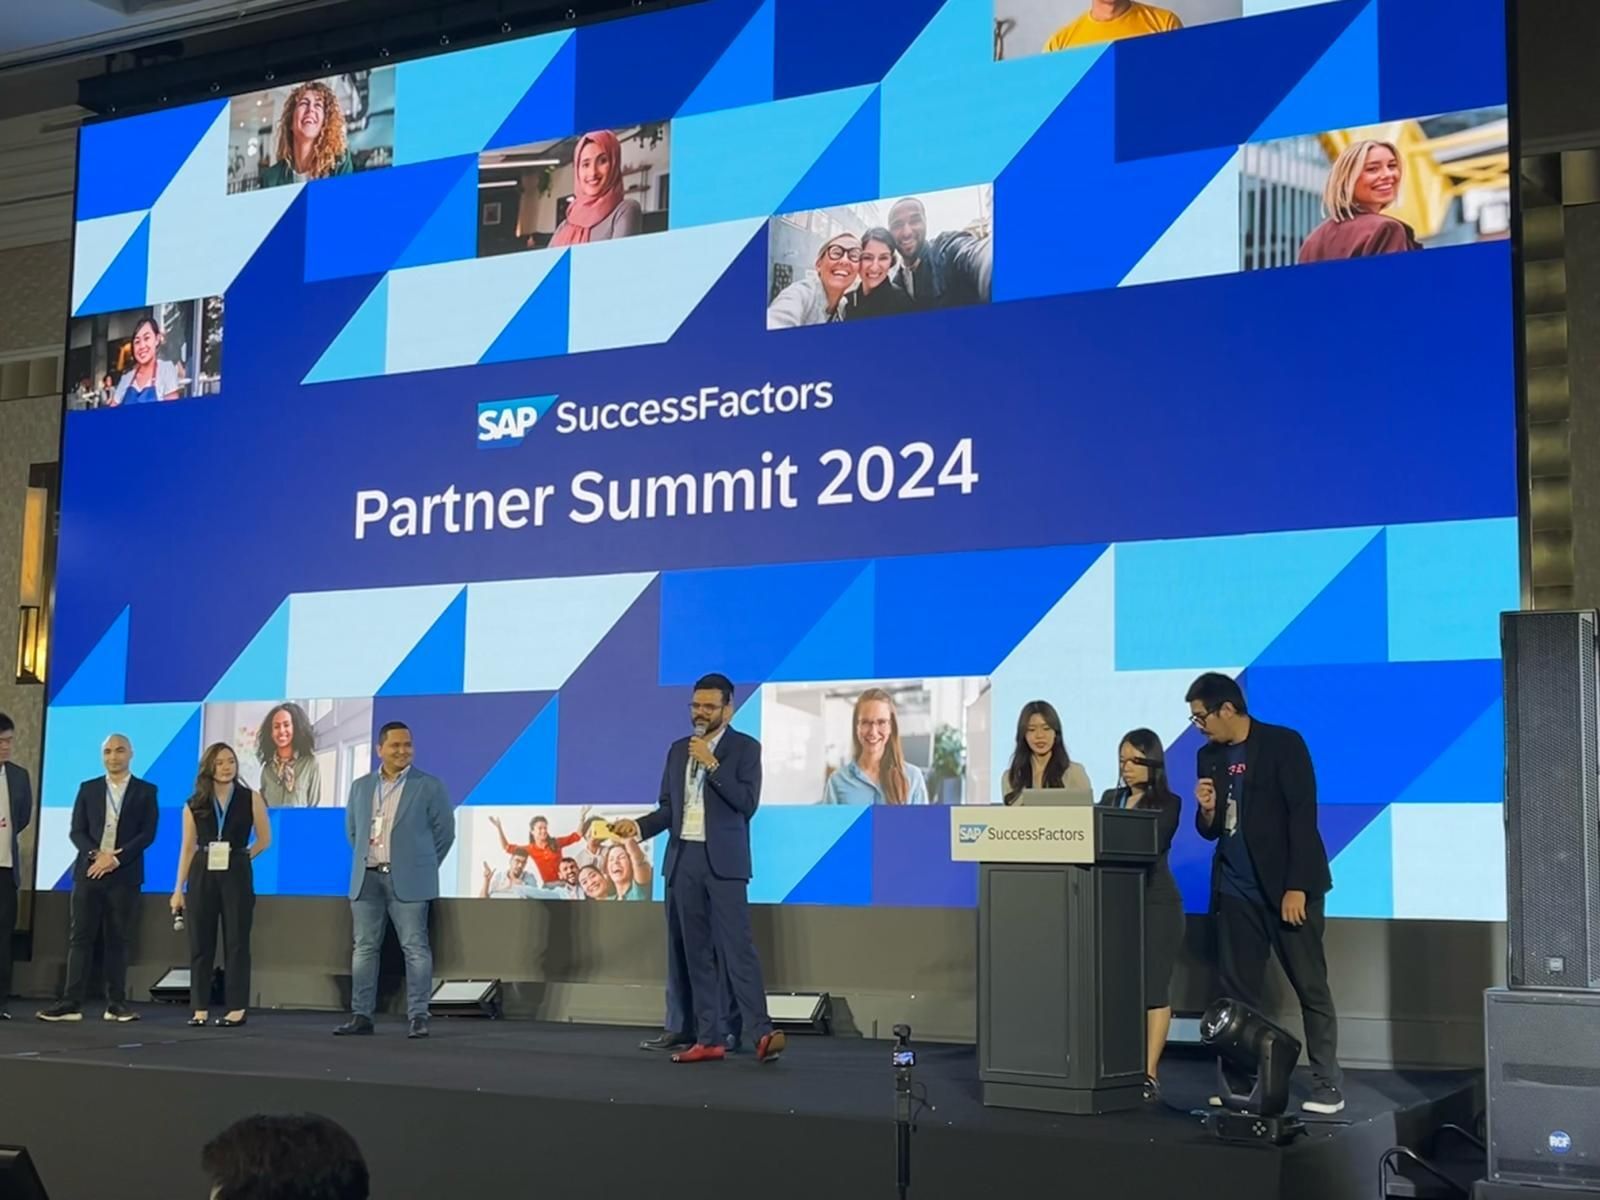 APJ SAP SuccessFactors Partner Summit 2024